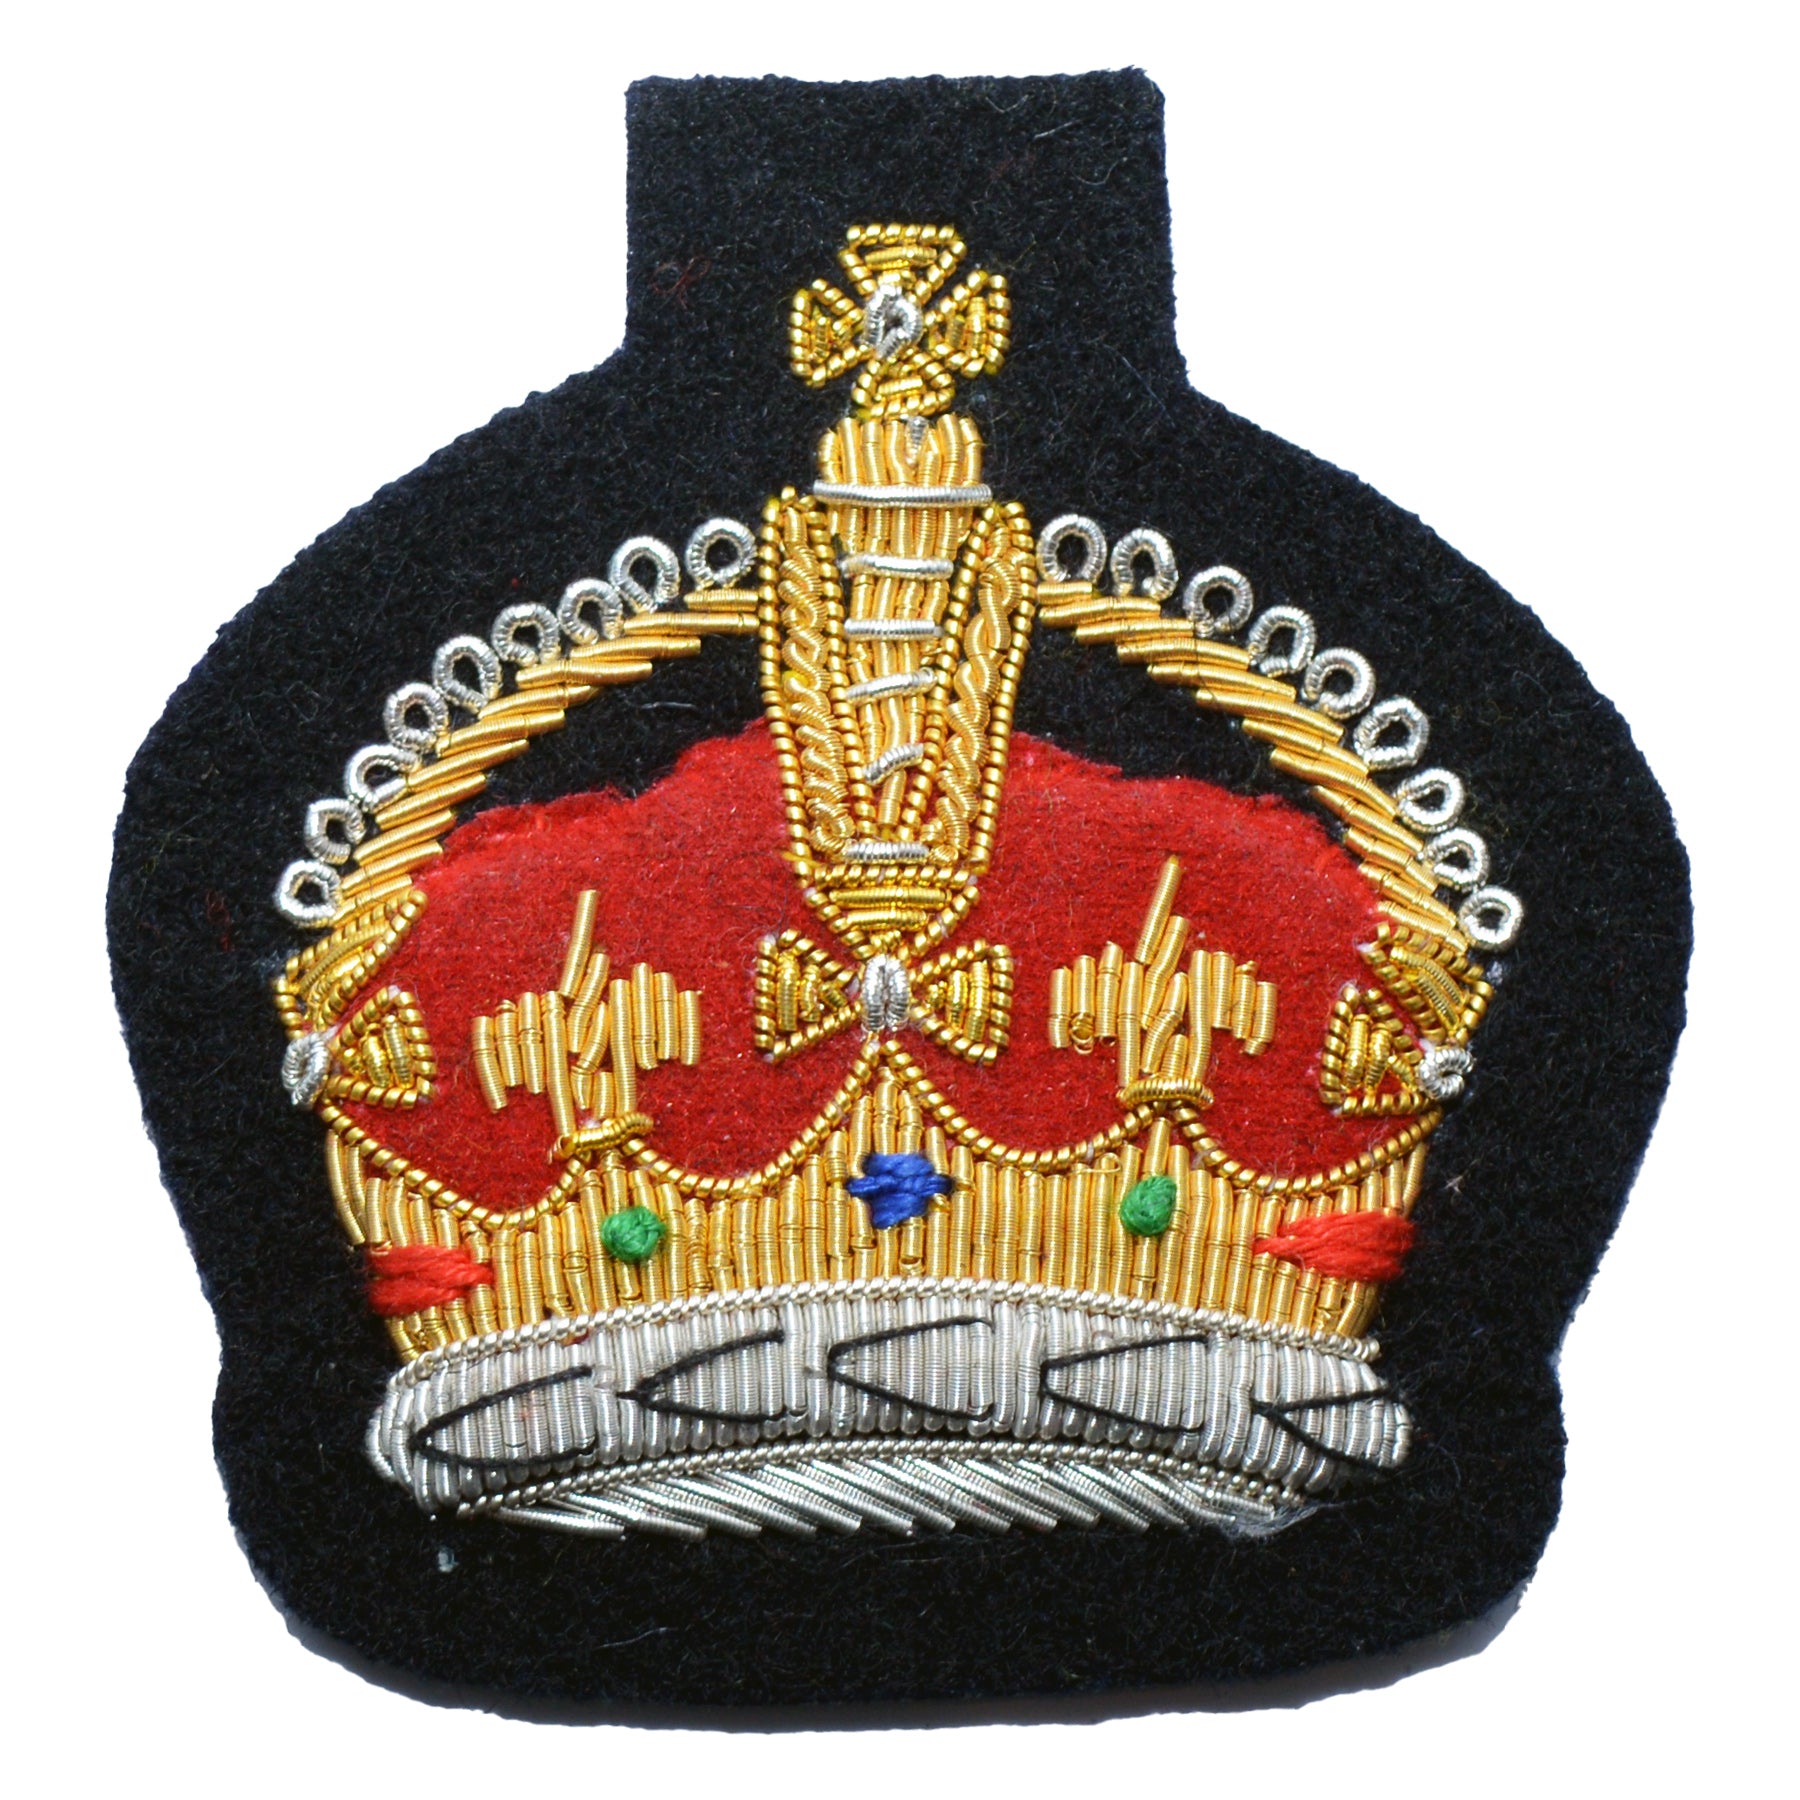 (Kings Crown) Royal Hospital Chelsea Large Crown Rank Badge Warrant Of